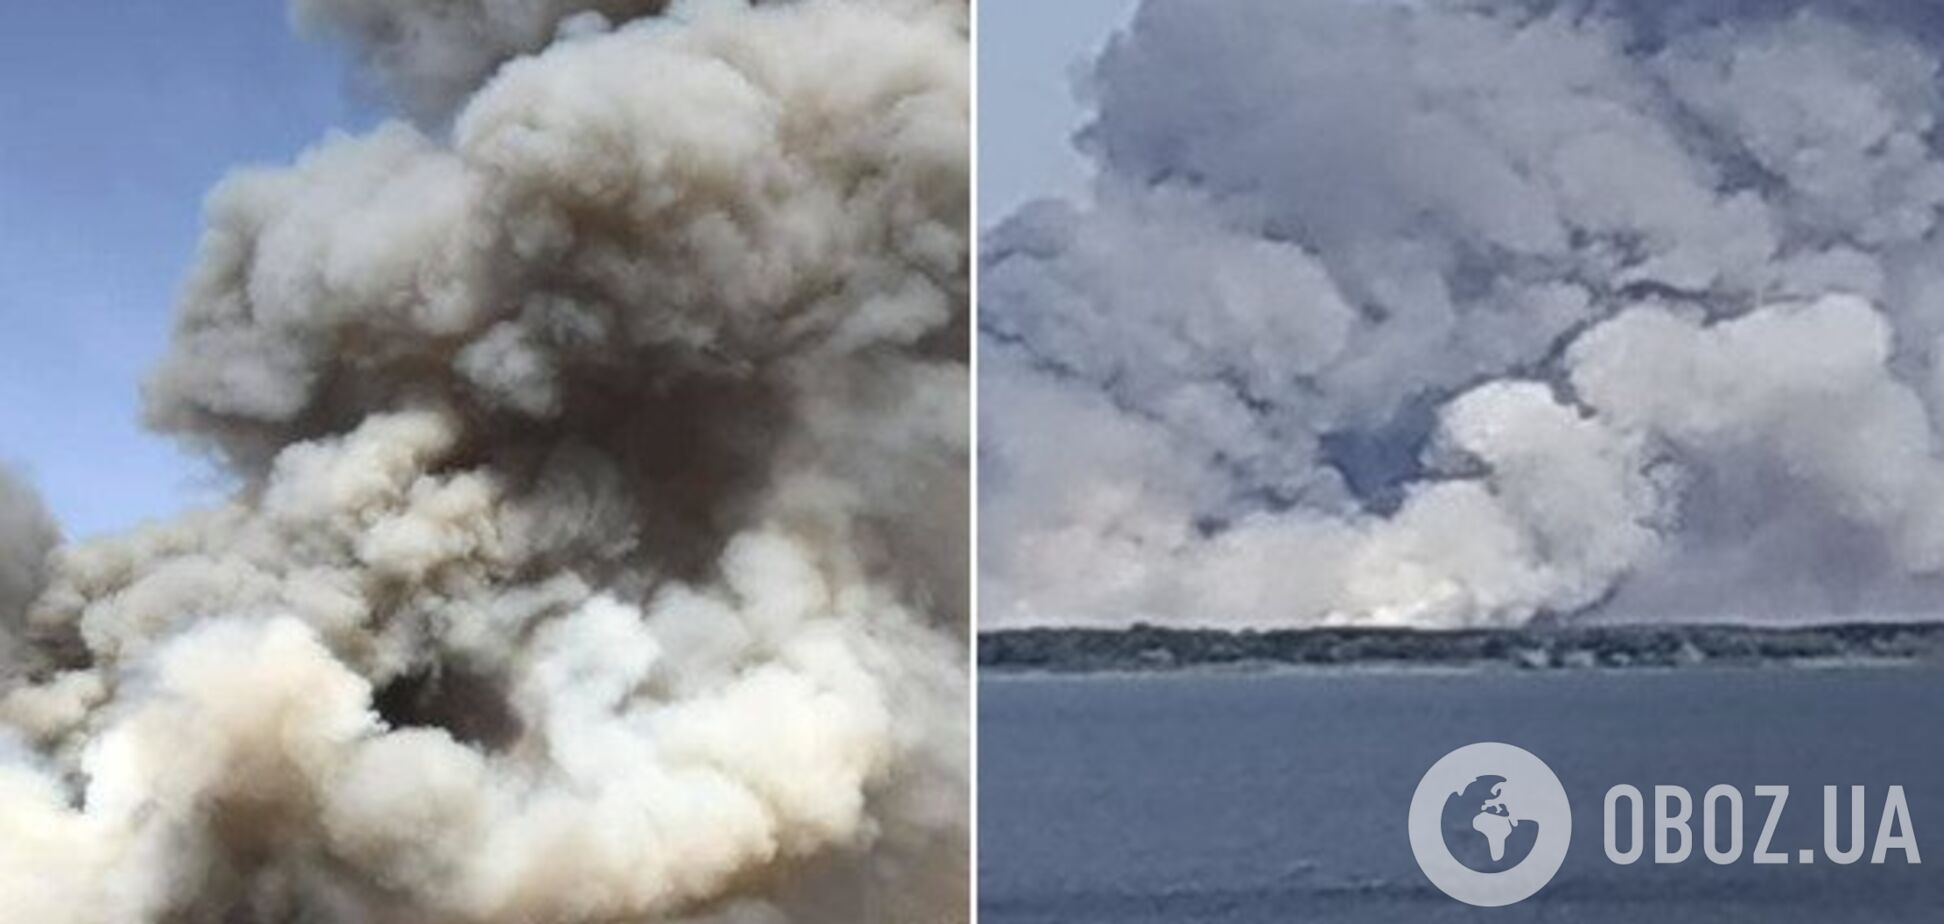 Днепропетровщина в огне: в сети появились жуткие фото масштабного лесного пожара